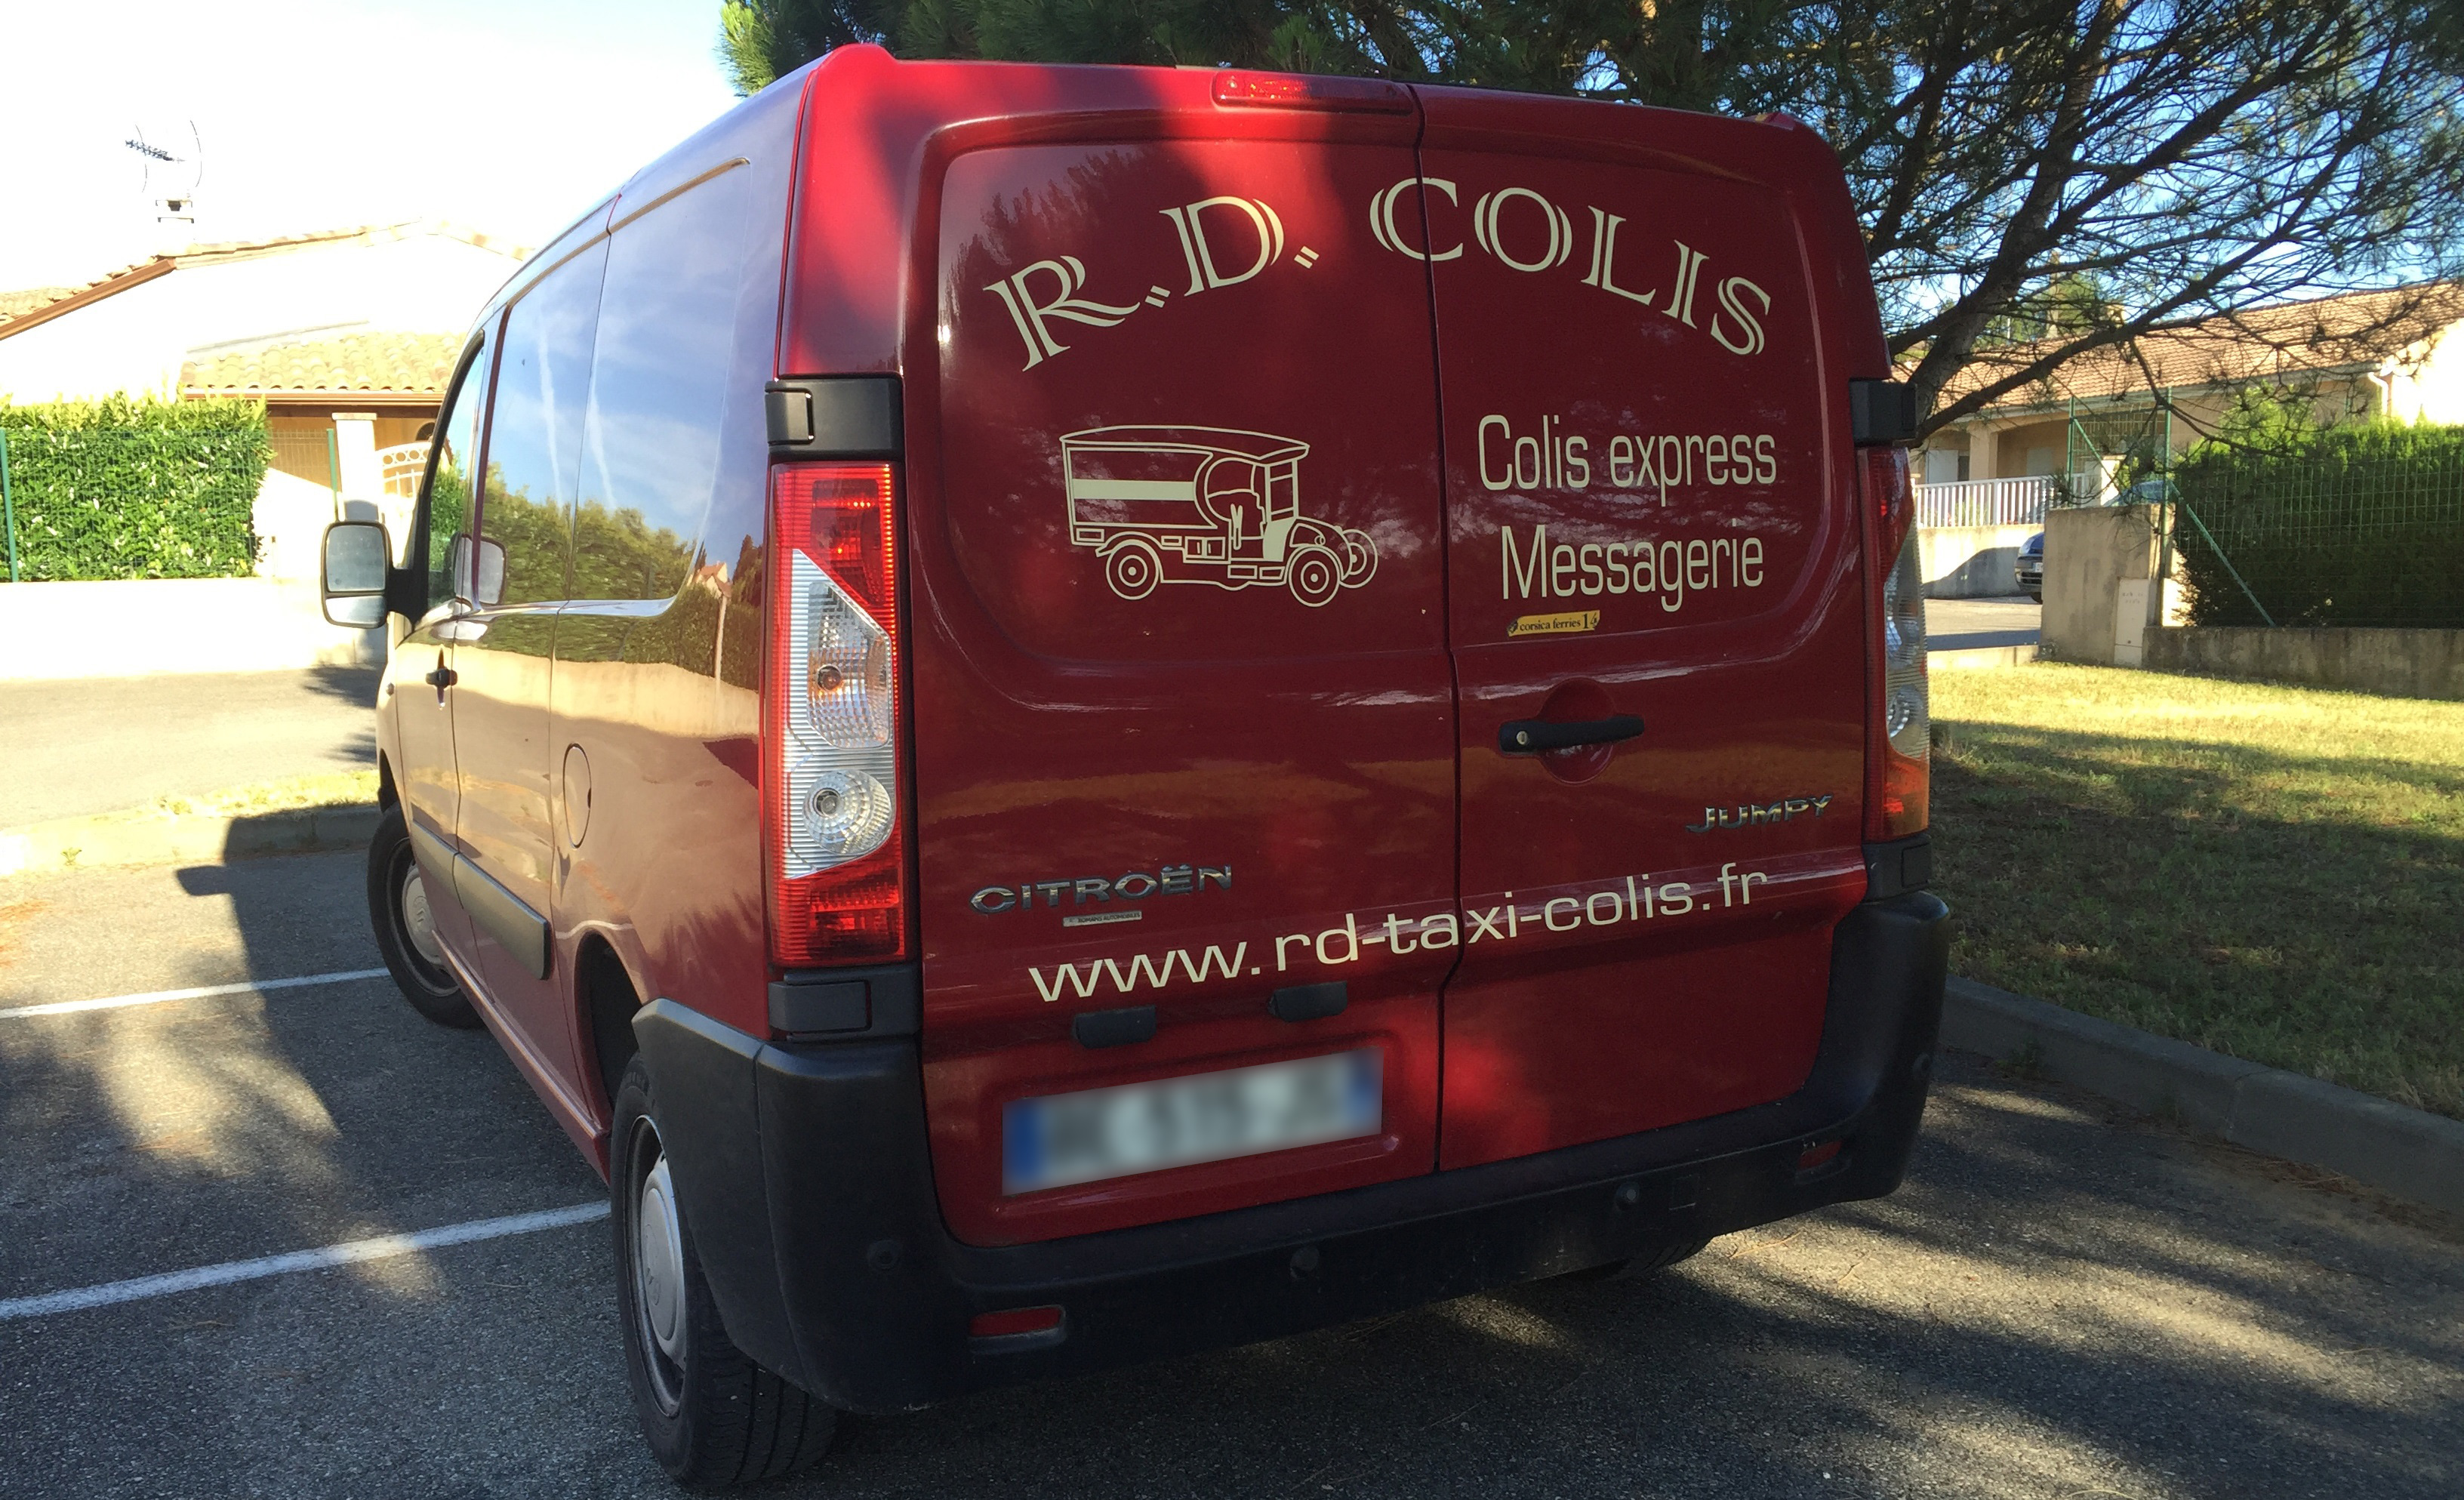 RD Colis transport express Romans sur Isère